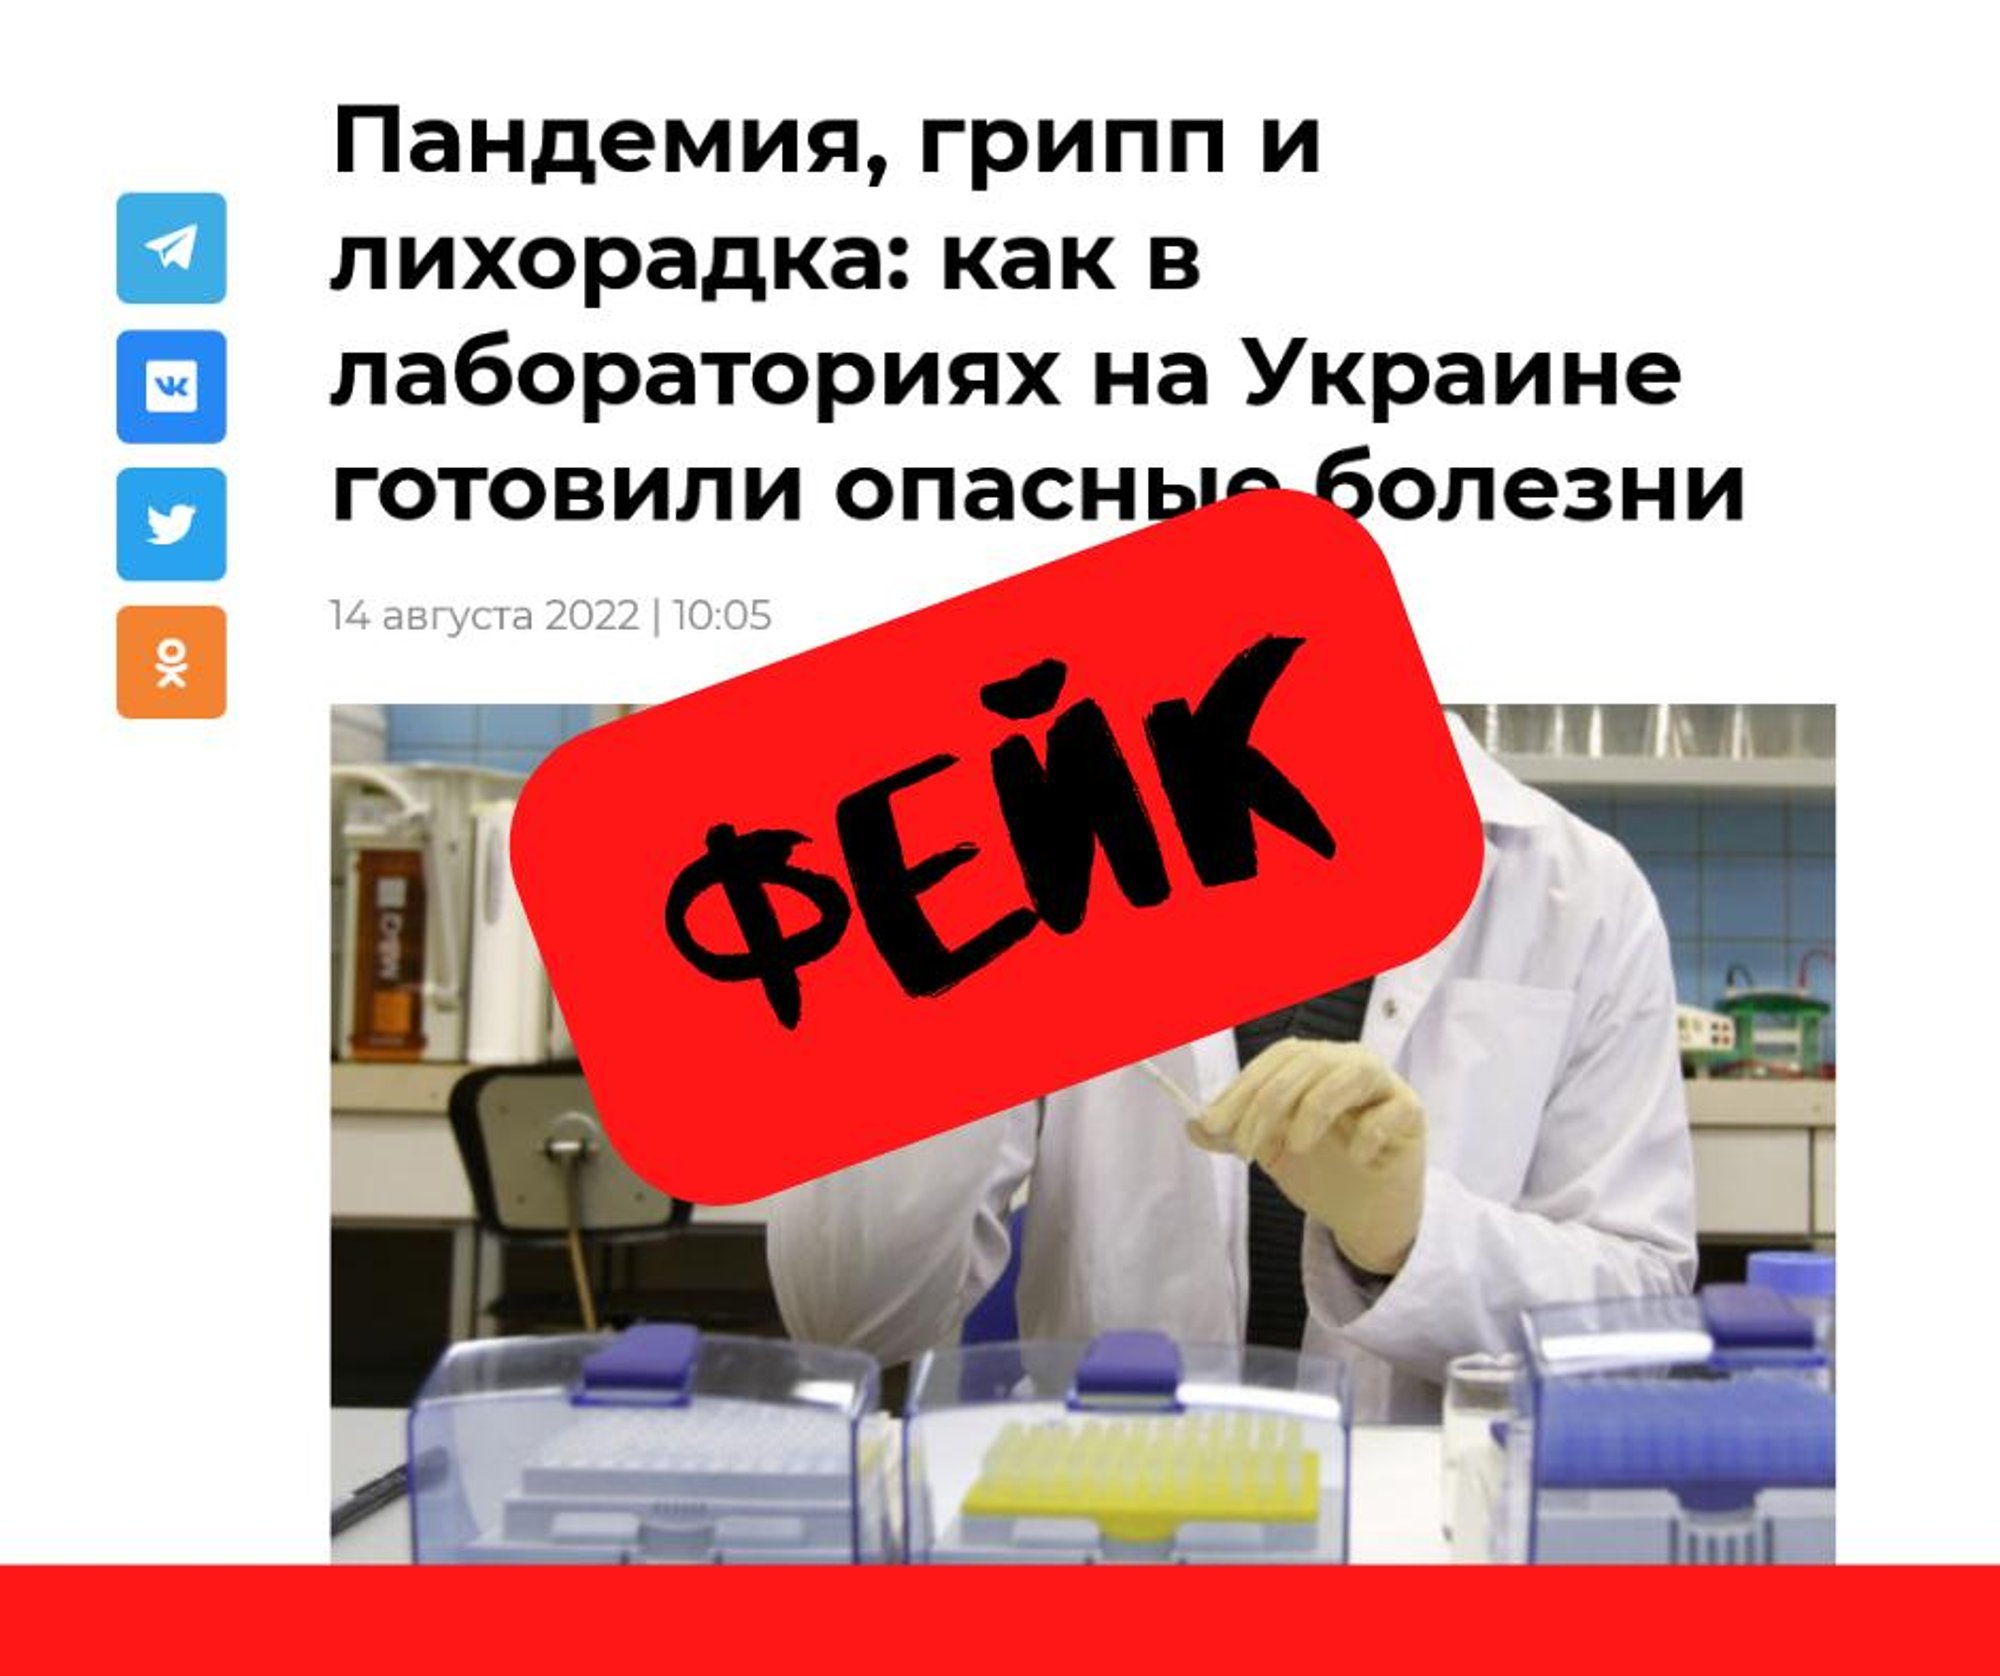 Фейк: „Пандемия, грипп и лихорадка: как в лабораториях Украины готовили опасные болезни“